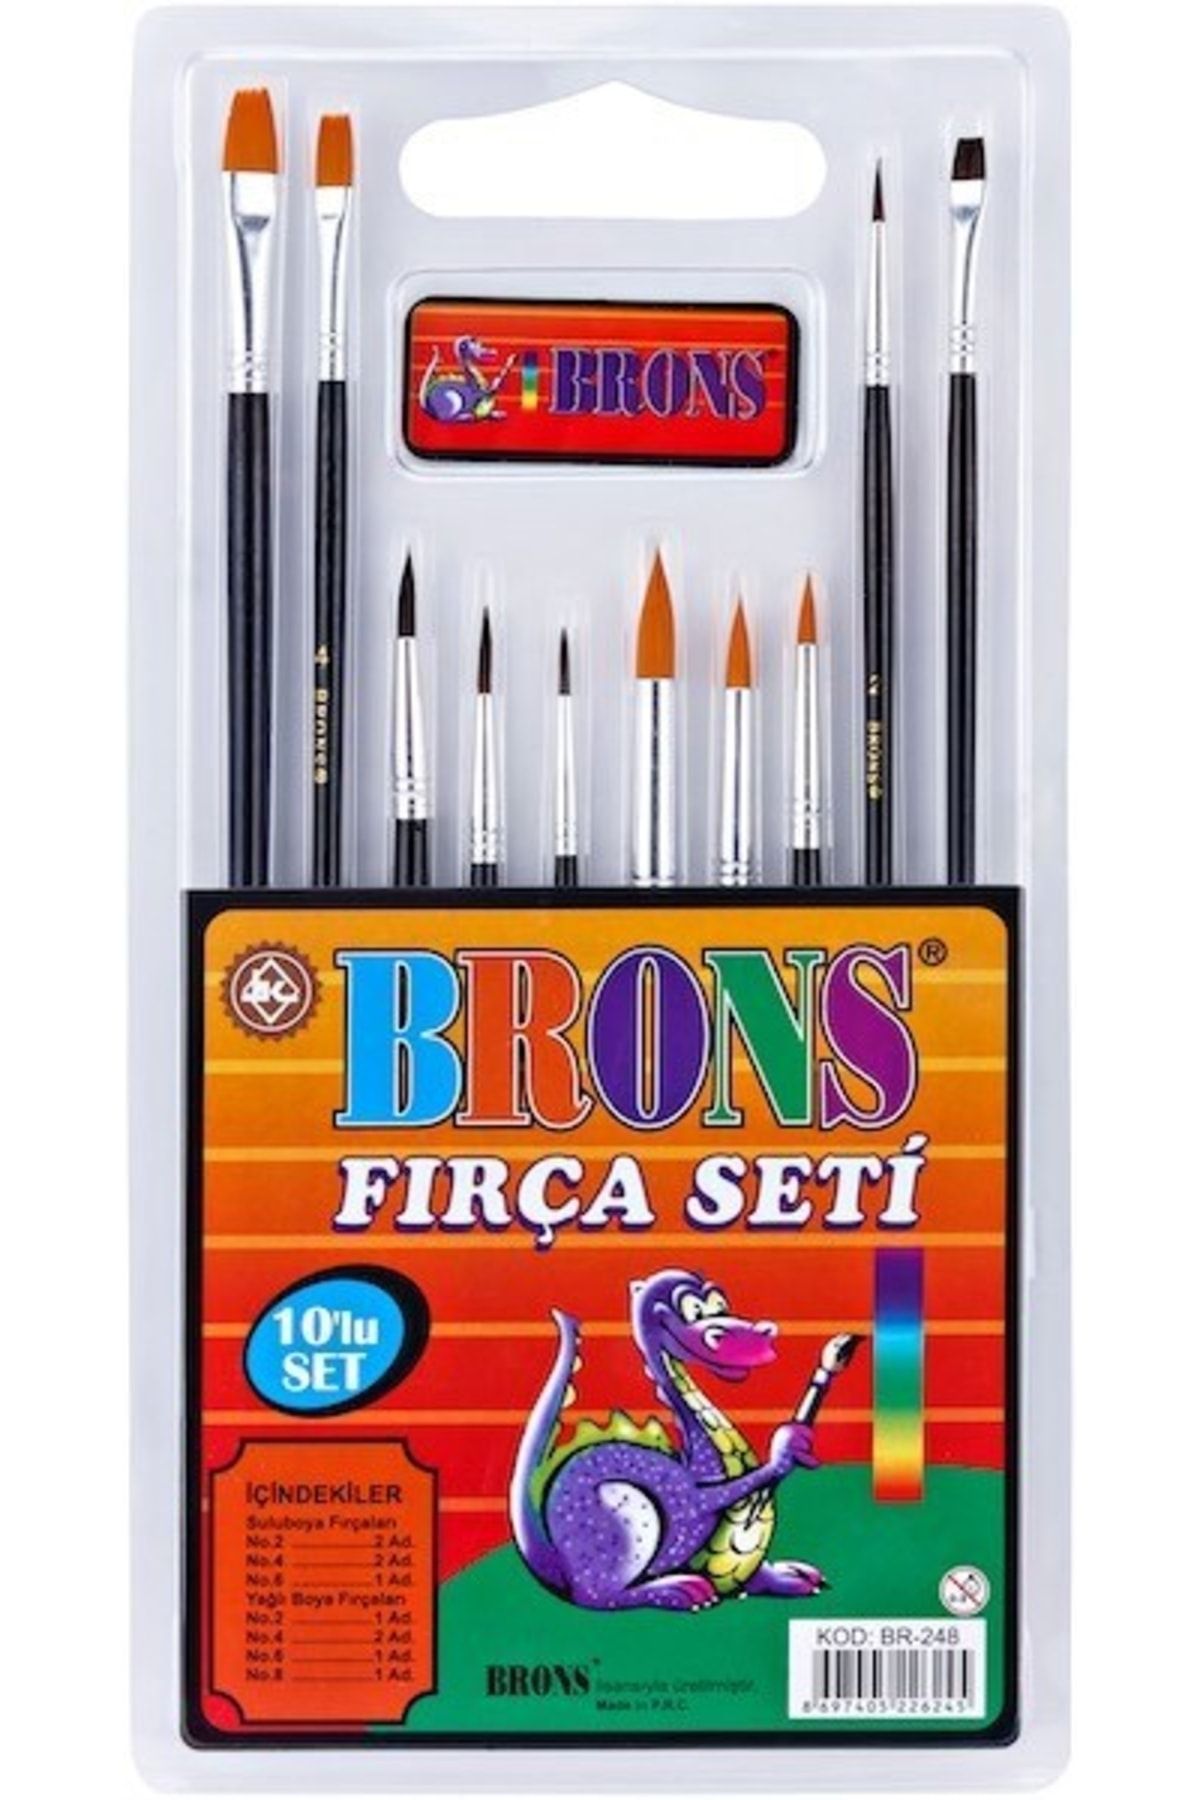 Brons Fırça Setı 10 Lu Br-248